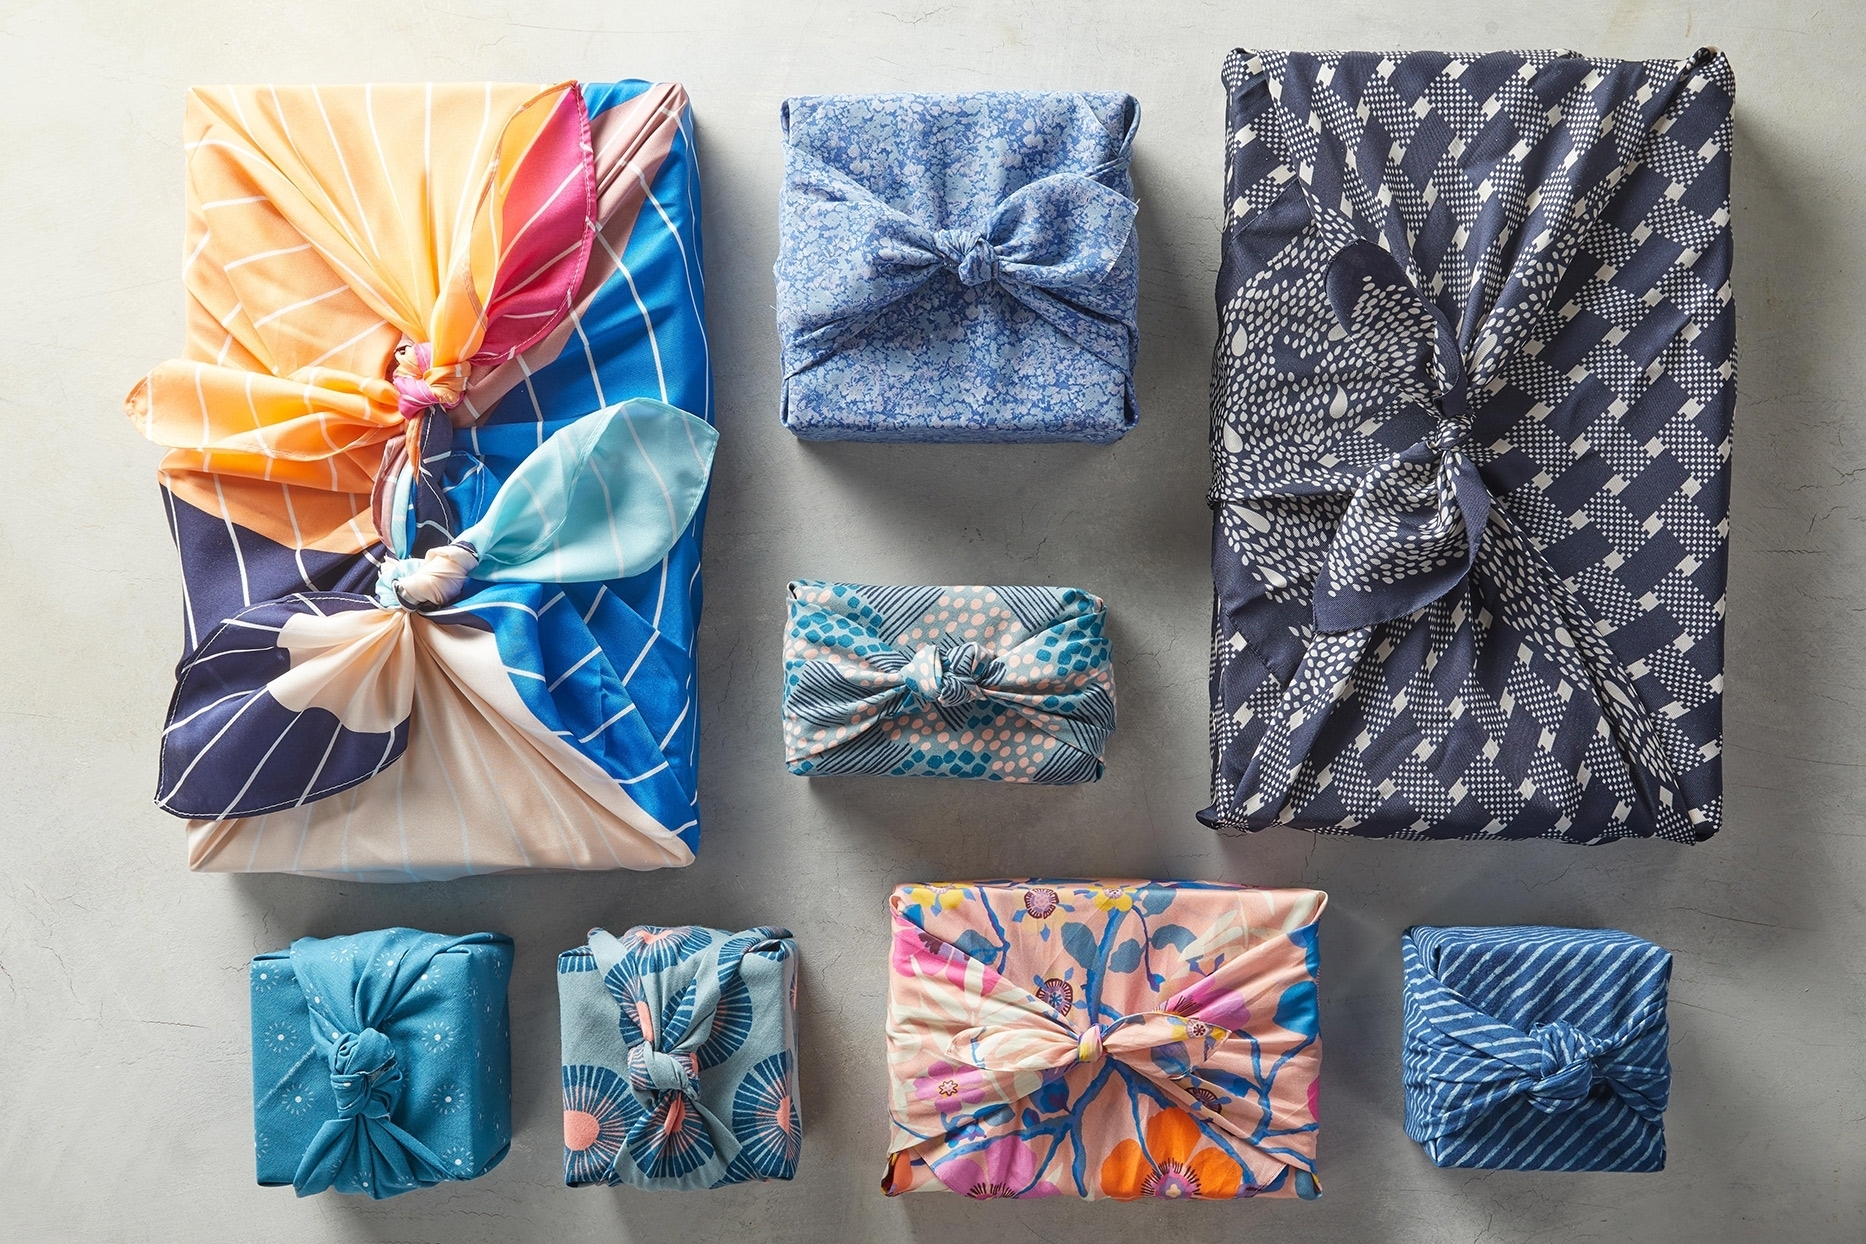 Узнайте, как красиво завернуть подарок в ткань